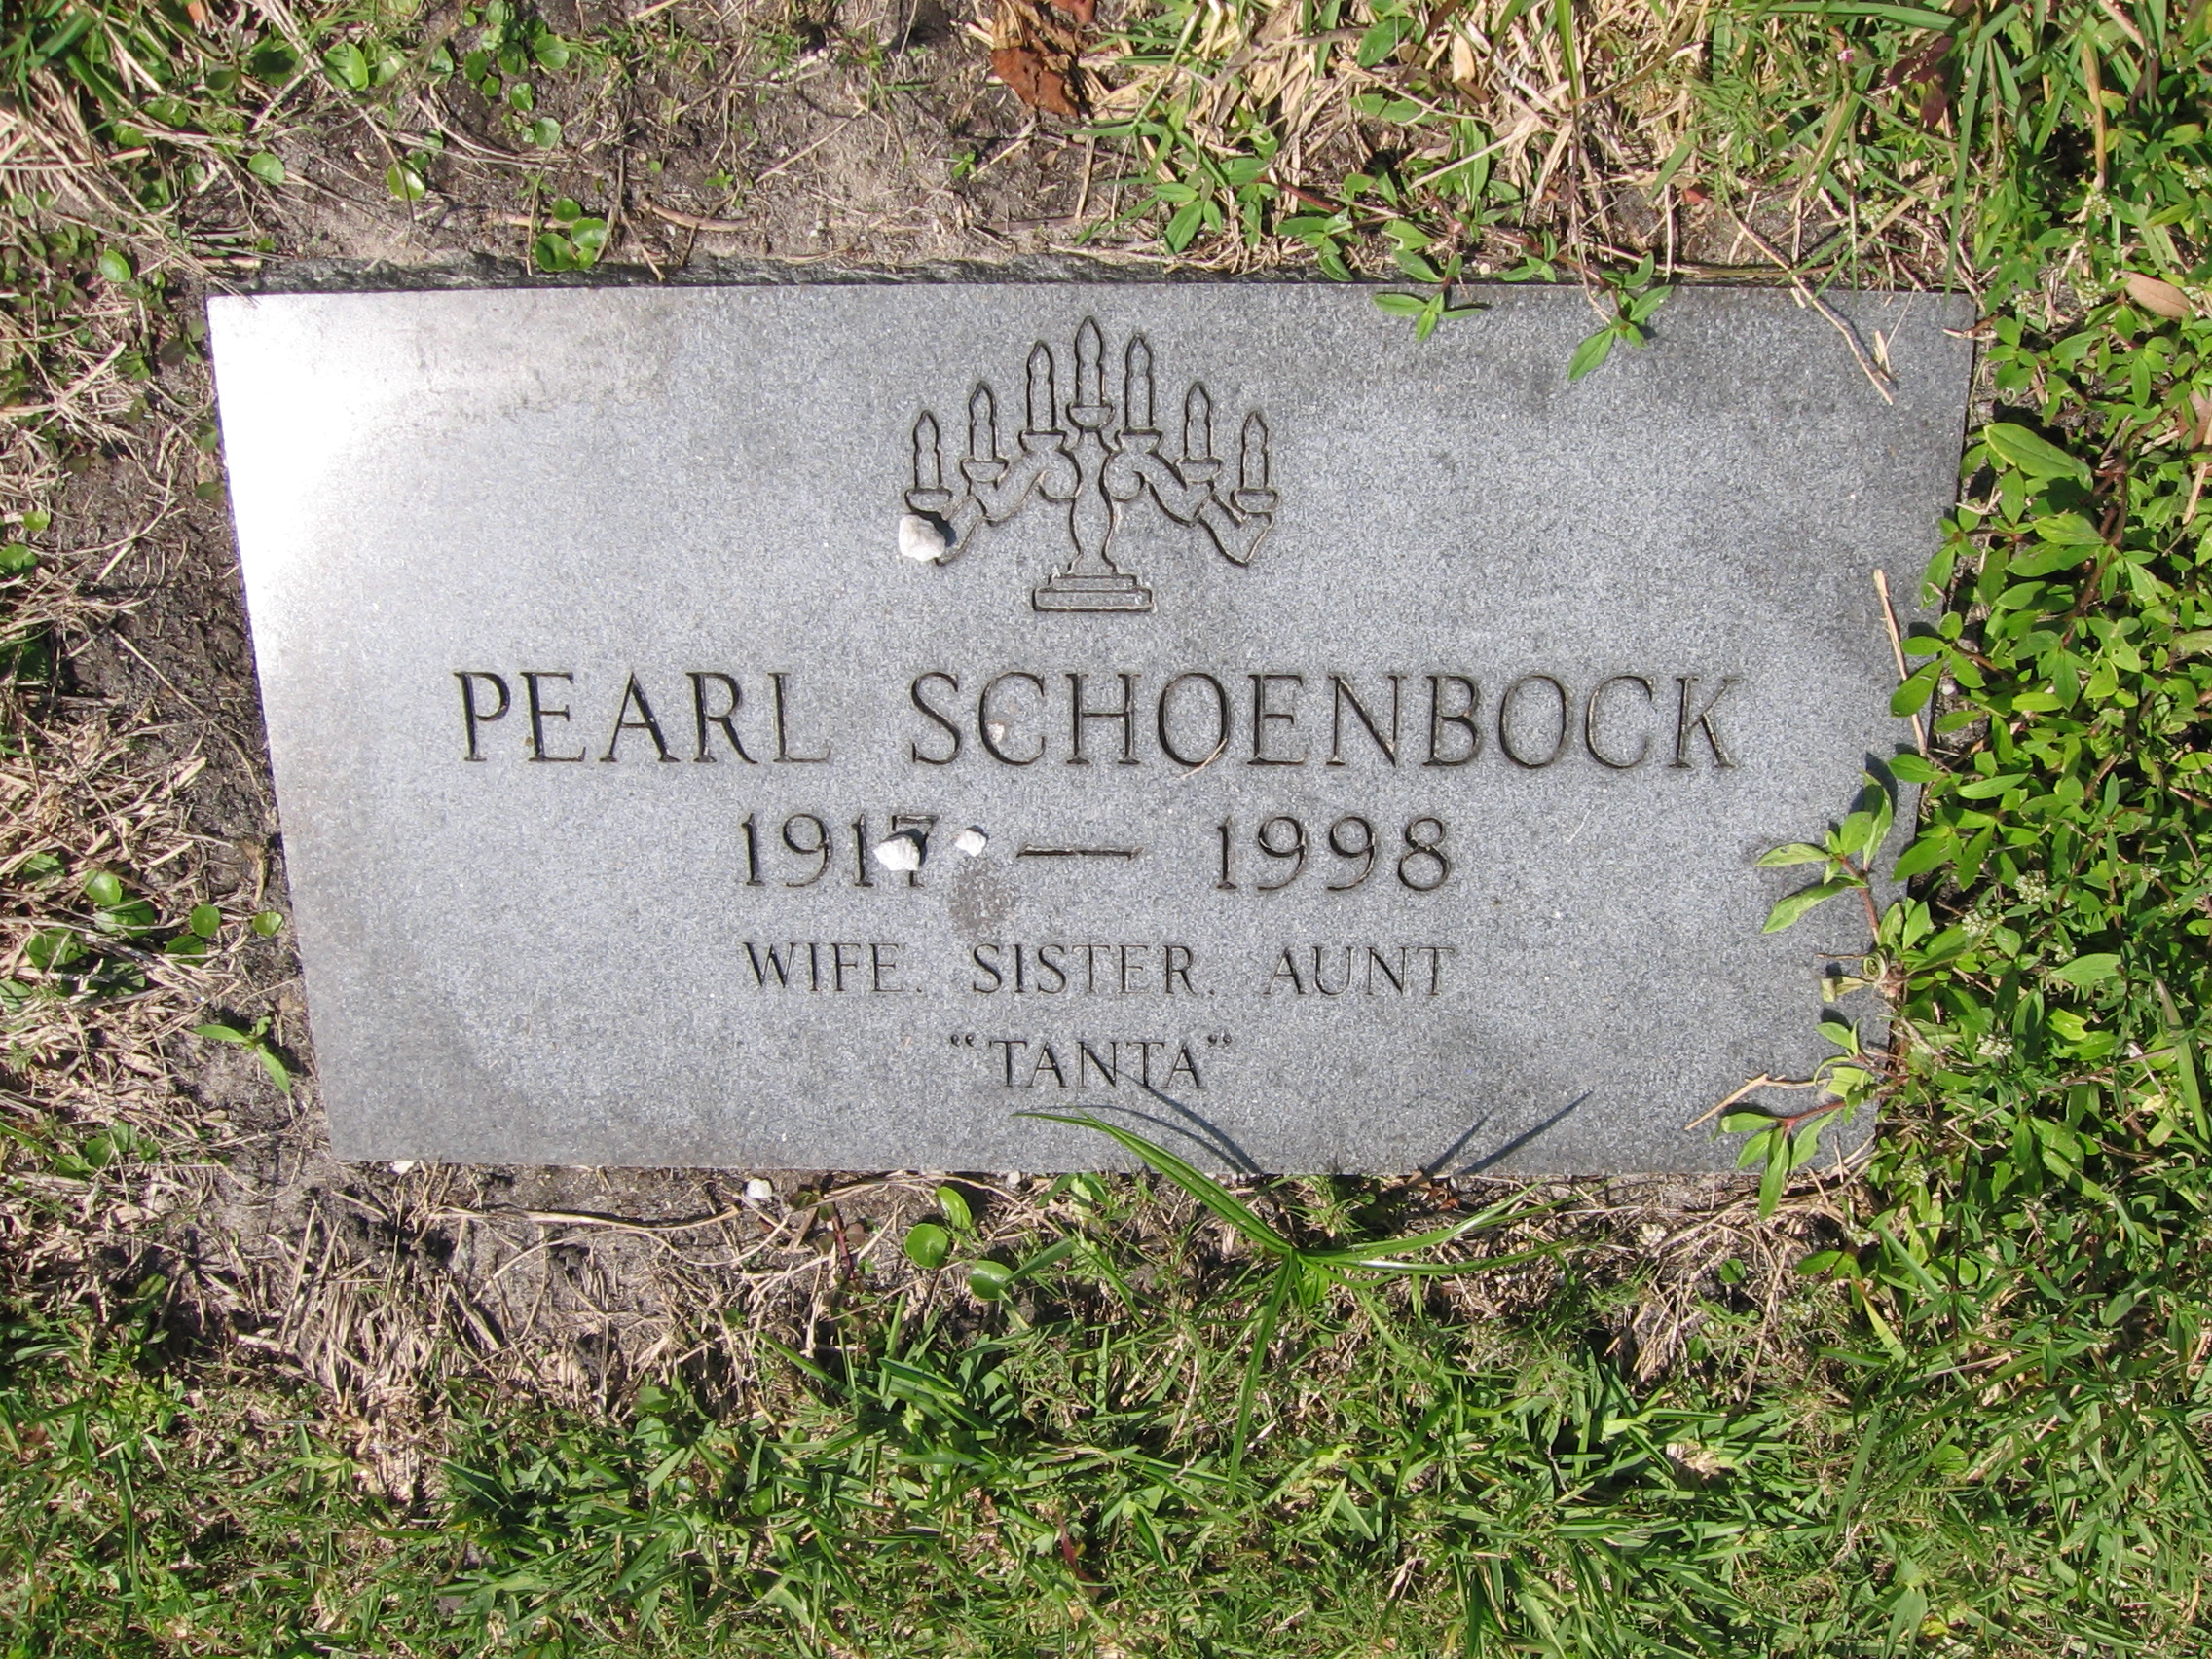 Pearl "Tanta" Schoenbock